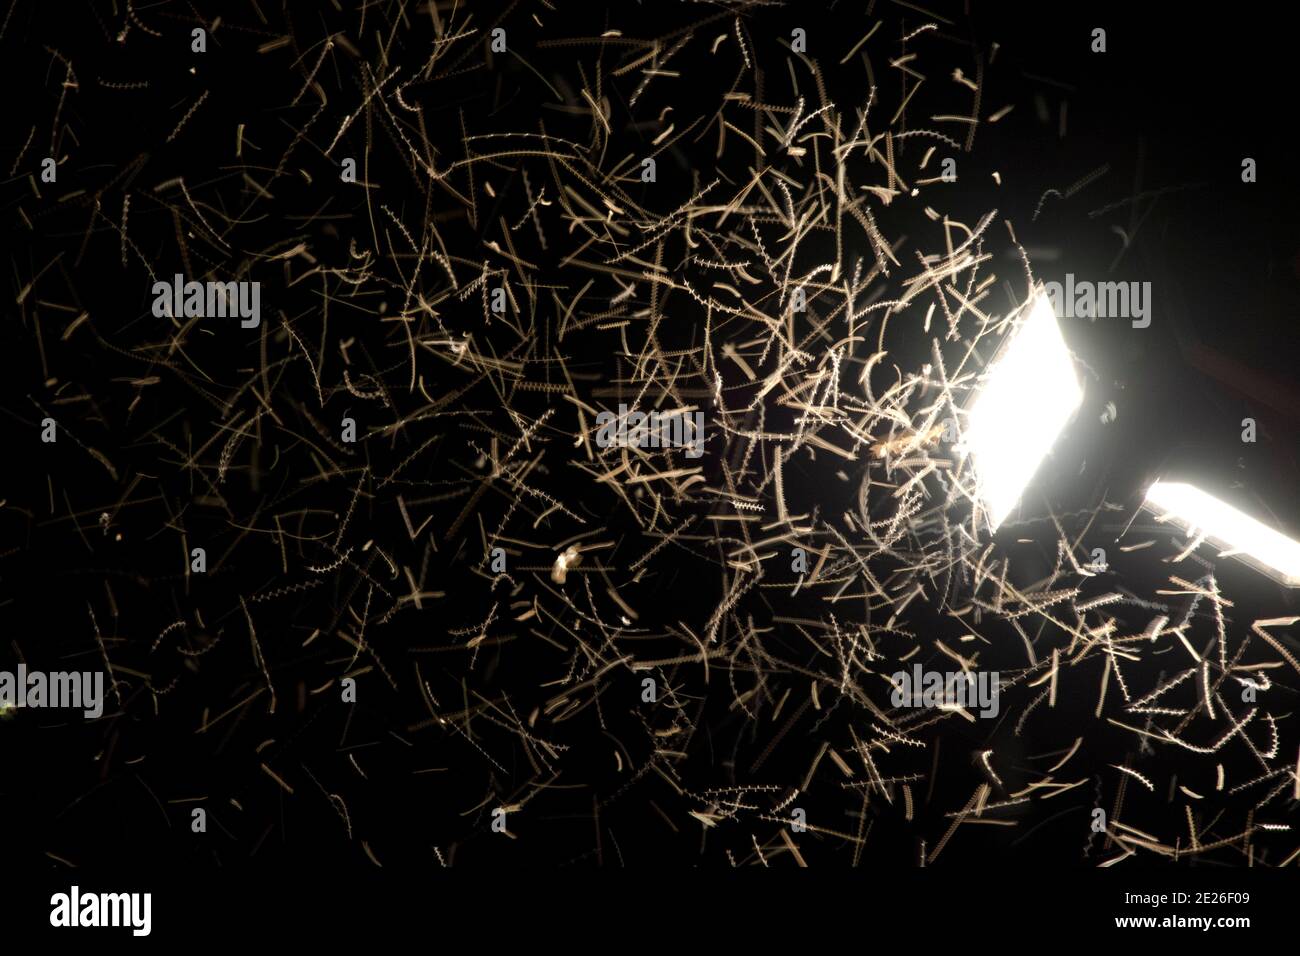 Tausende von Insekten kreisen um einen Scheinwerfer, eine tödliche Lichtfalle Stock Photo